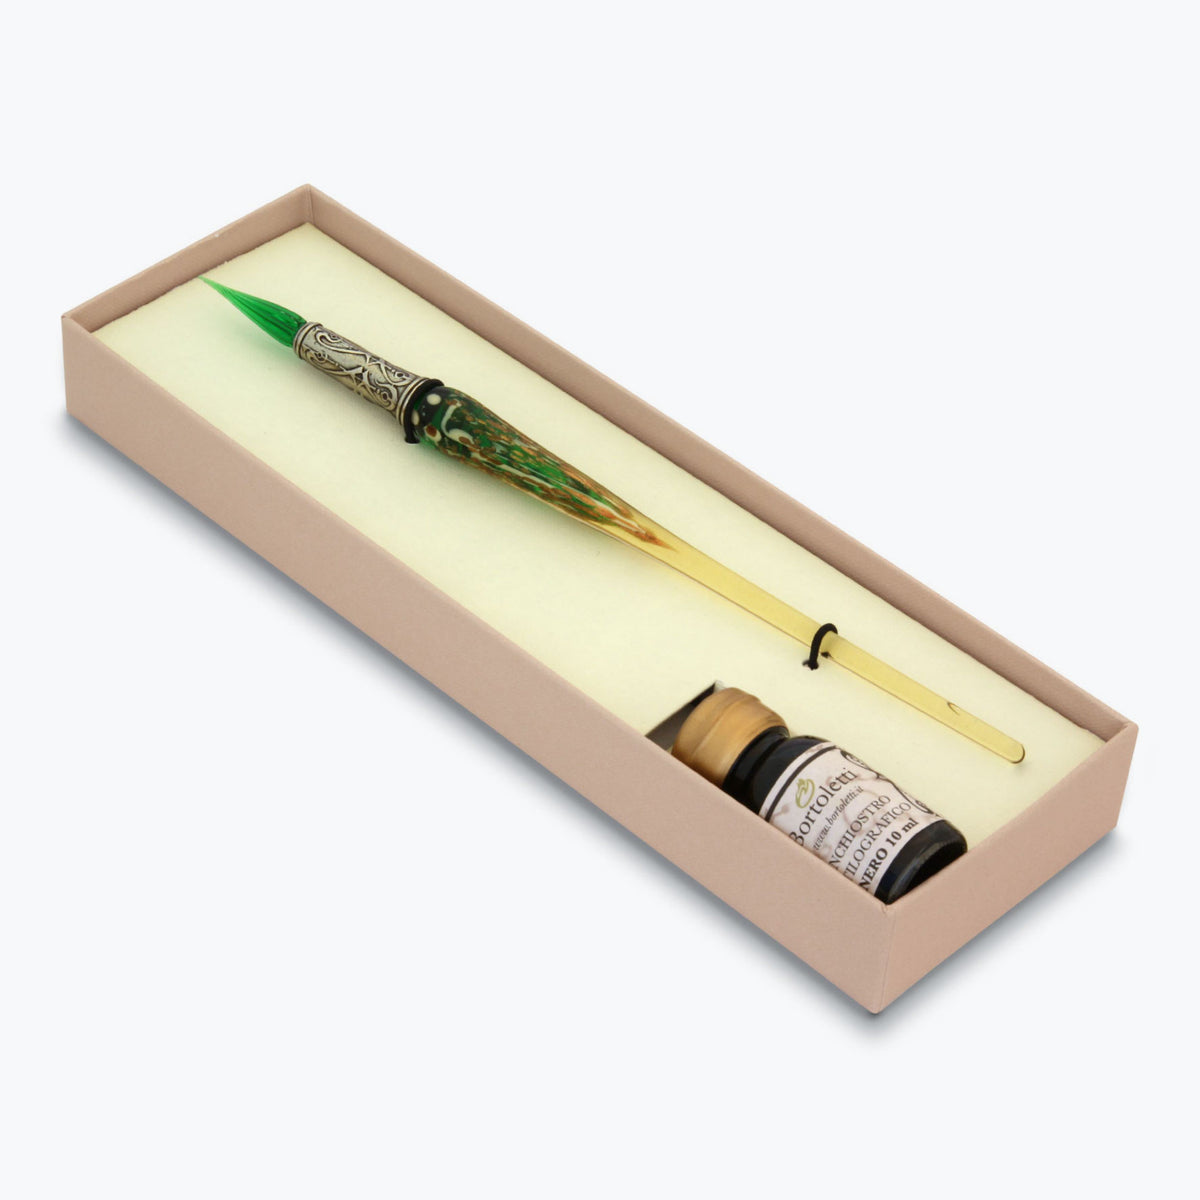 Bortoletti - Calligraphy Pen Set - Glass Nib - Green